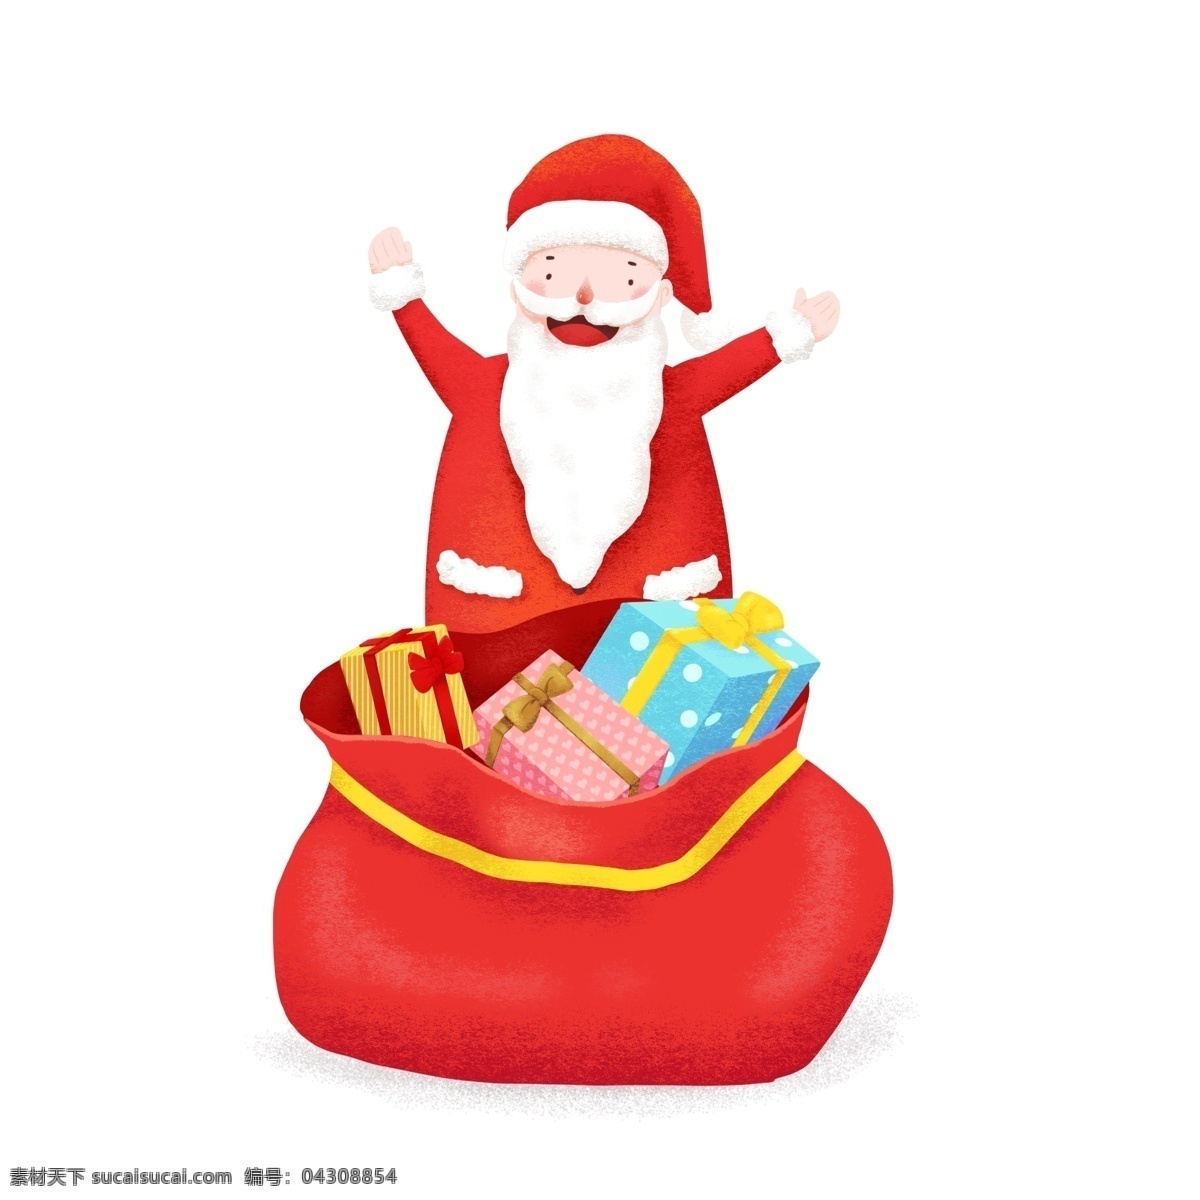 圣诞节 手绘 插画 圣诞老人 发 礼物 元素 发礼物 圣诞 开心 举手 圣诞快乐